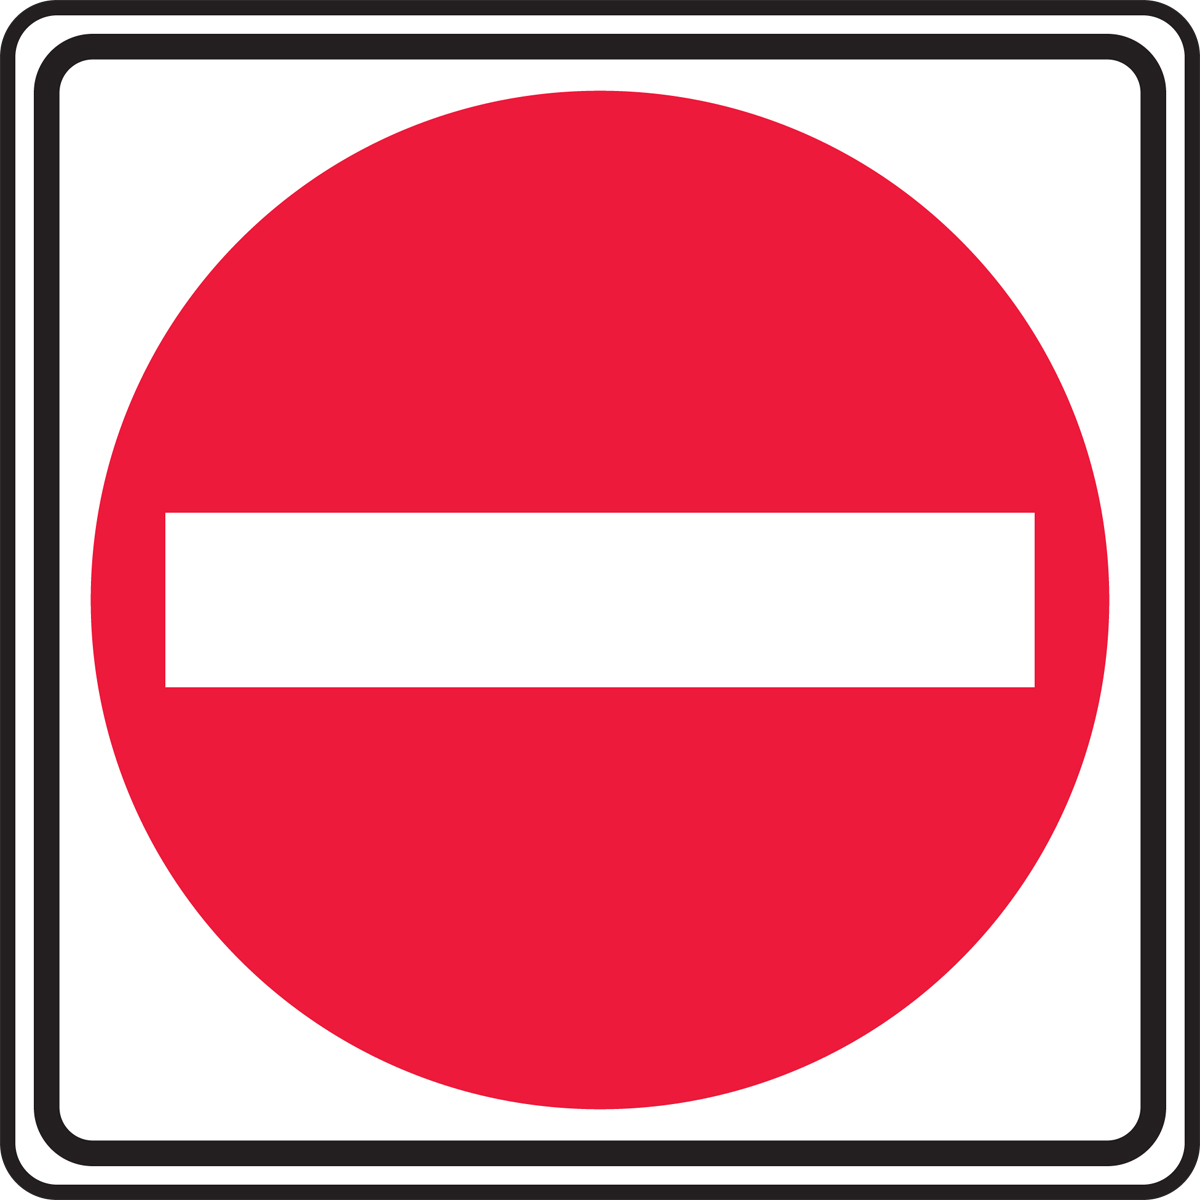 Do Not Enter Traffic Sign Frr